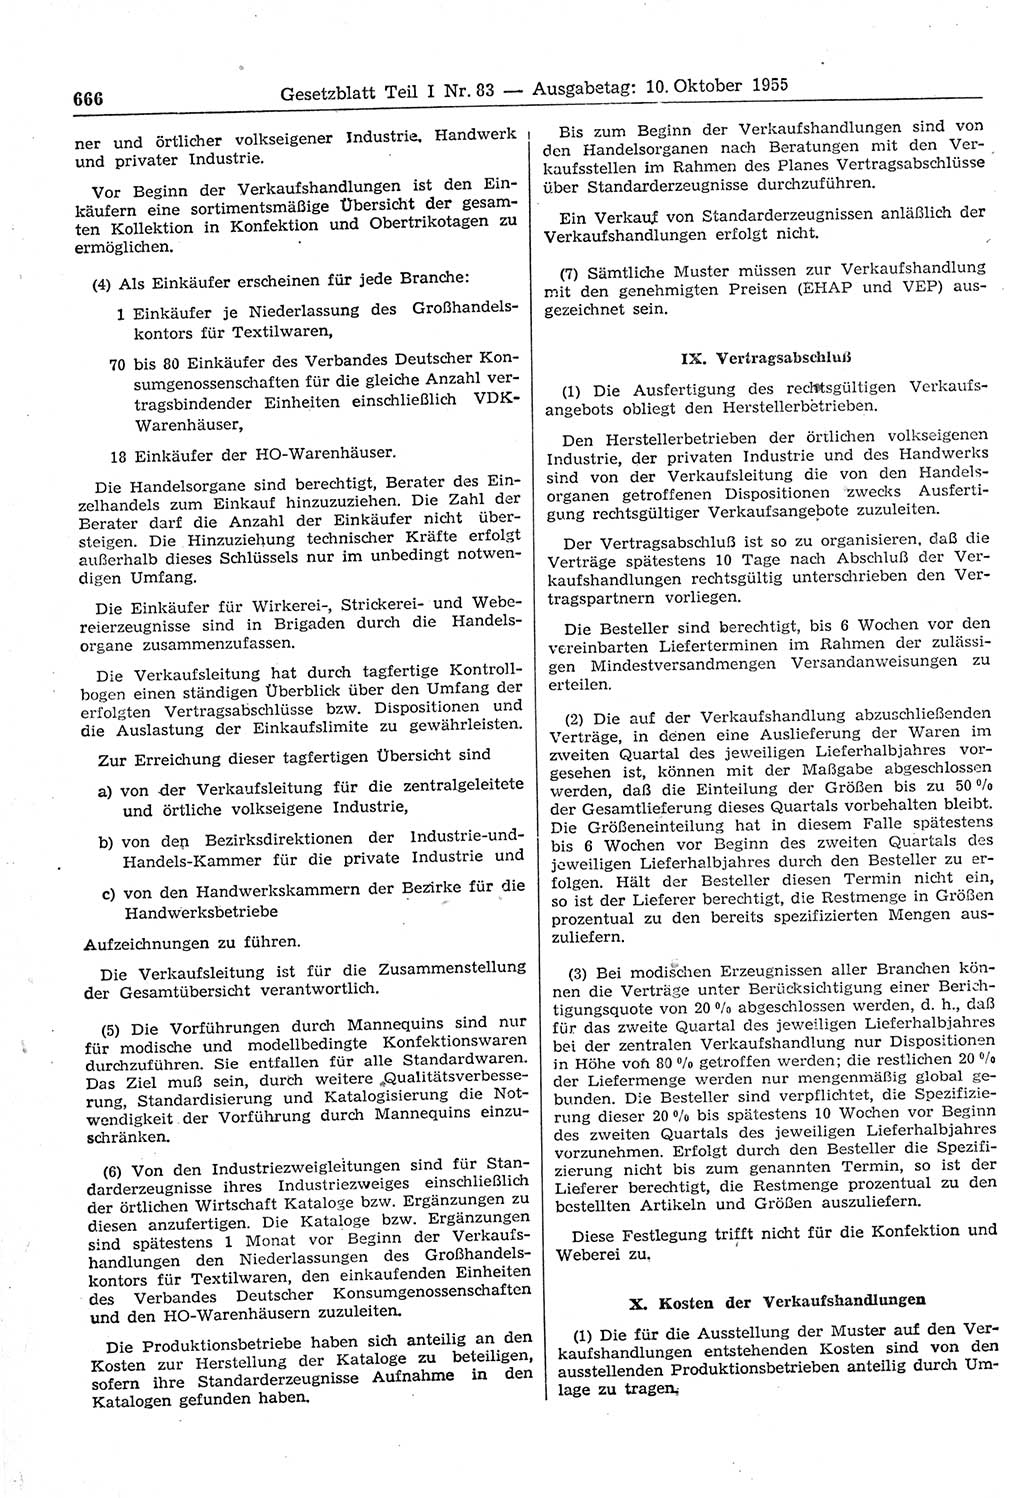 Gesetzblatt (GBl.) der Deutschen Demokratischen Republik (DDR) Teil Ⅰ 1955, Seite 666 (GBl. DDR Ⅰ 1955, S. 666)